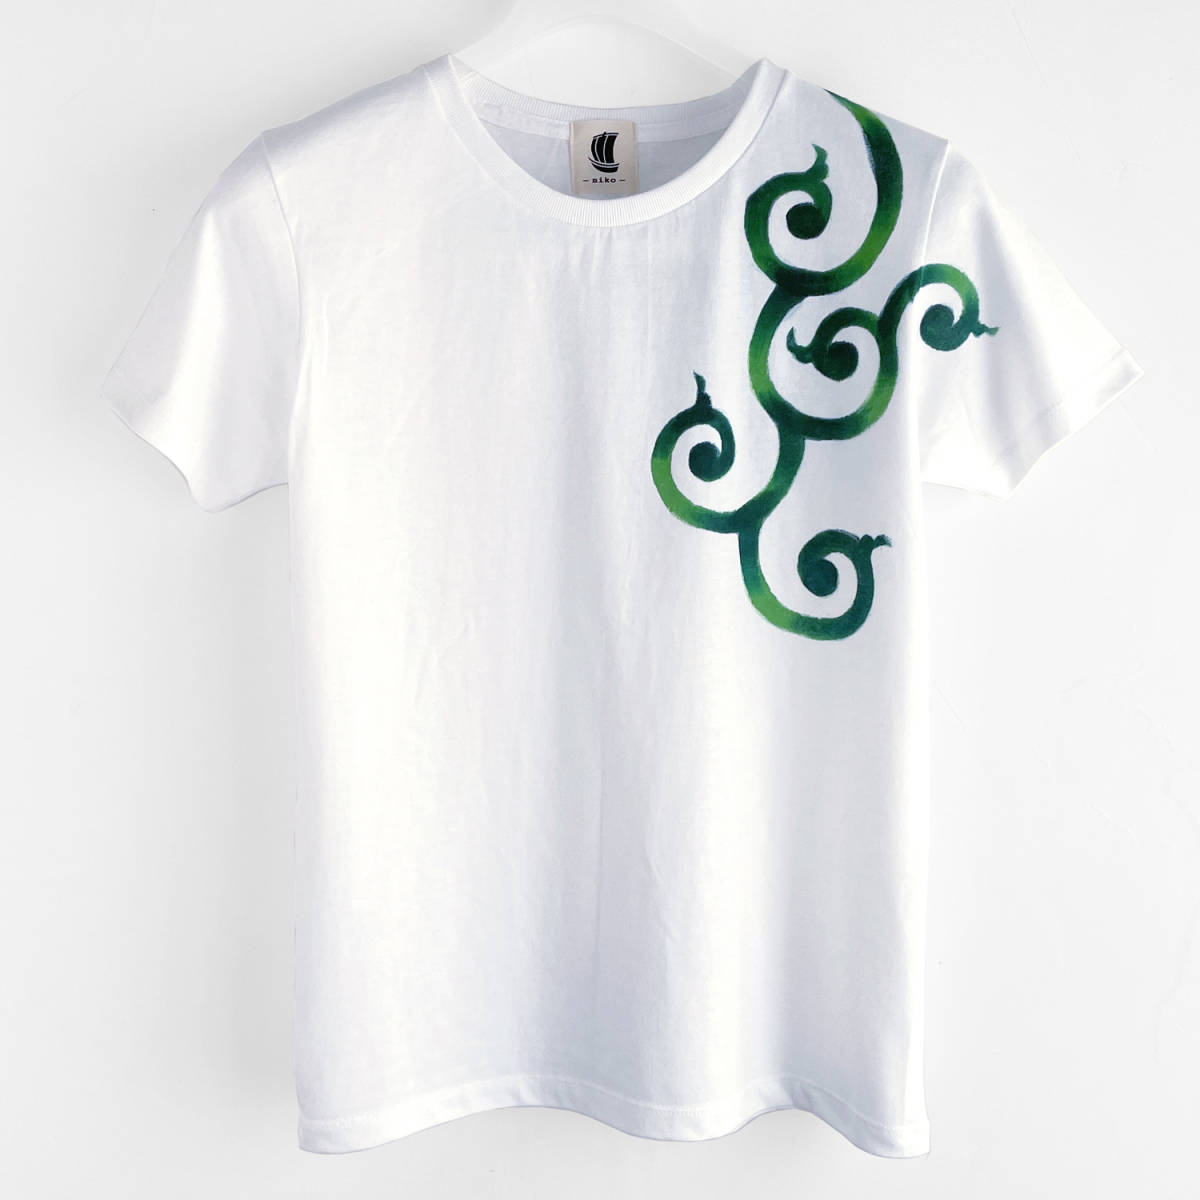 महिलाओं की टी-शर्ट एम आकार अरबी पैटर्न हरी टी-शर्ट सफेद हस्तनिर्मित हाथ से पेंट की गई टी-शर्ट, एम आकार, गोलाकार गर्दन, नमूनों